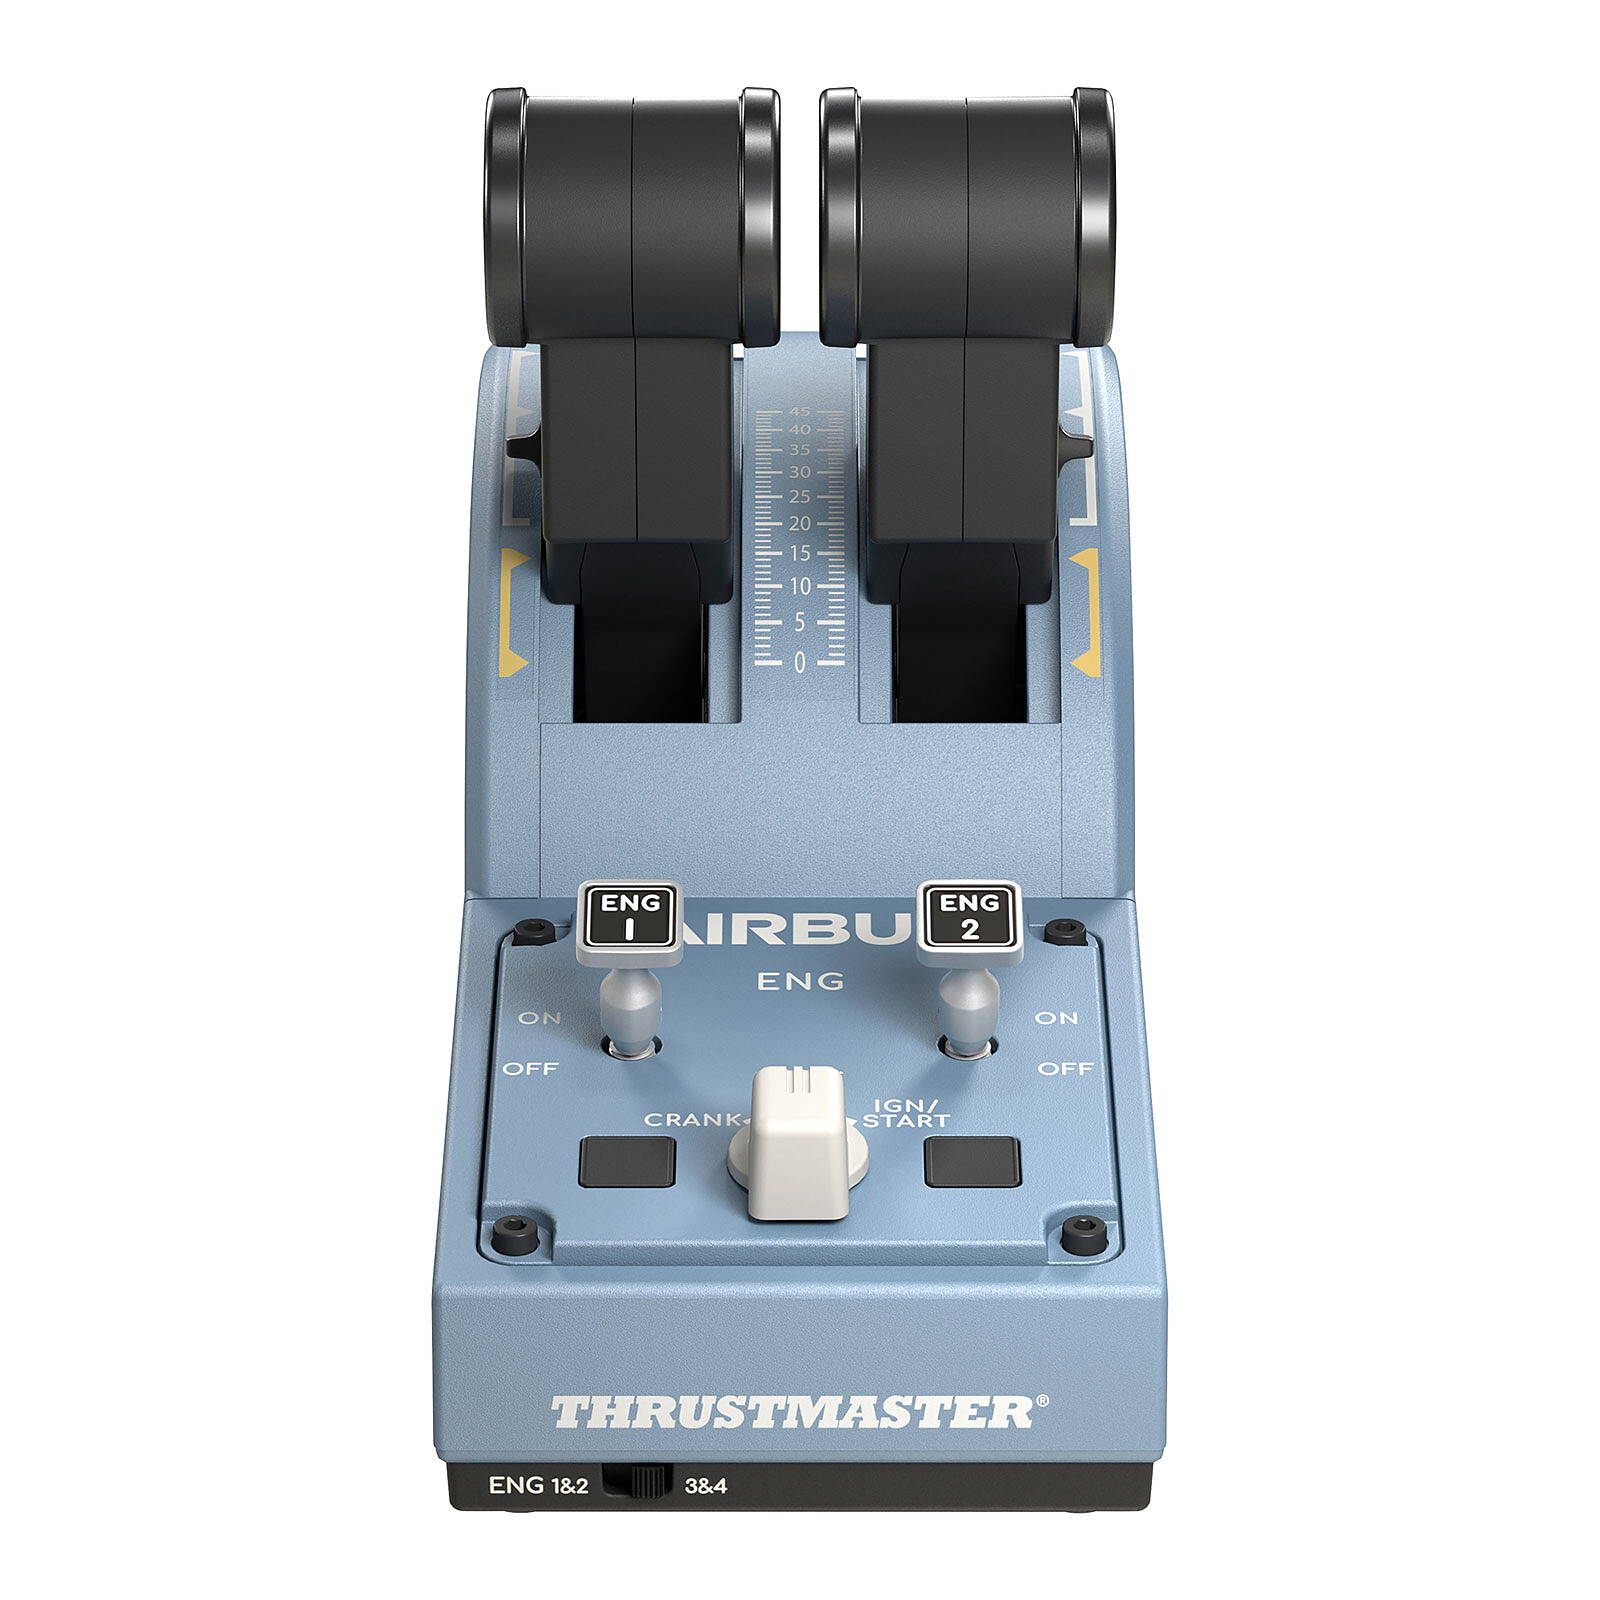 Bleu USB Joystick Analogique/Numérique PC Thrustmaster Thrustmaster Airbus Edition Noir 